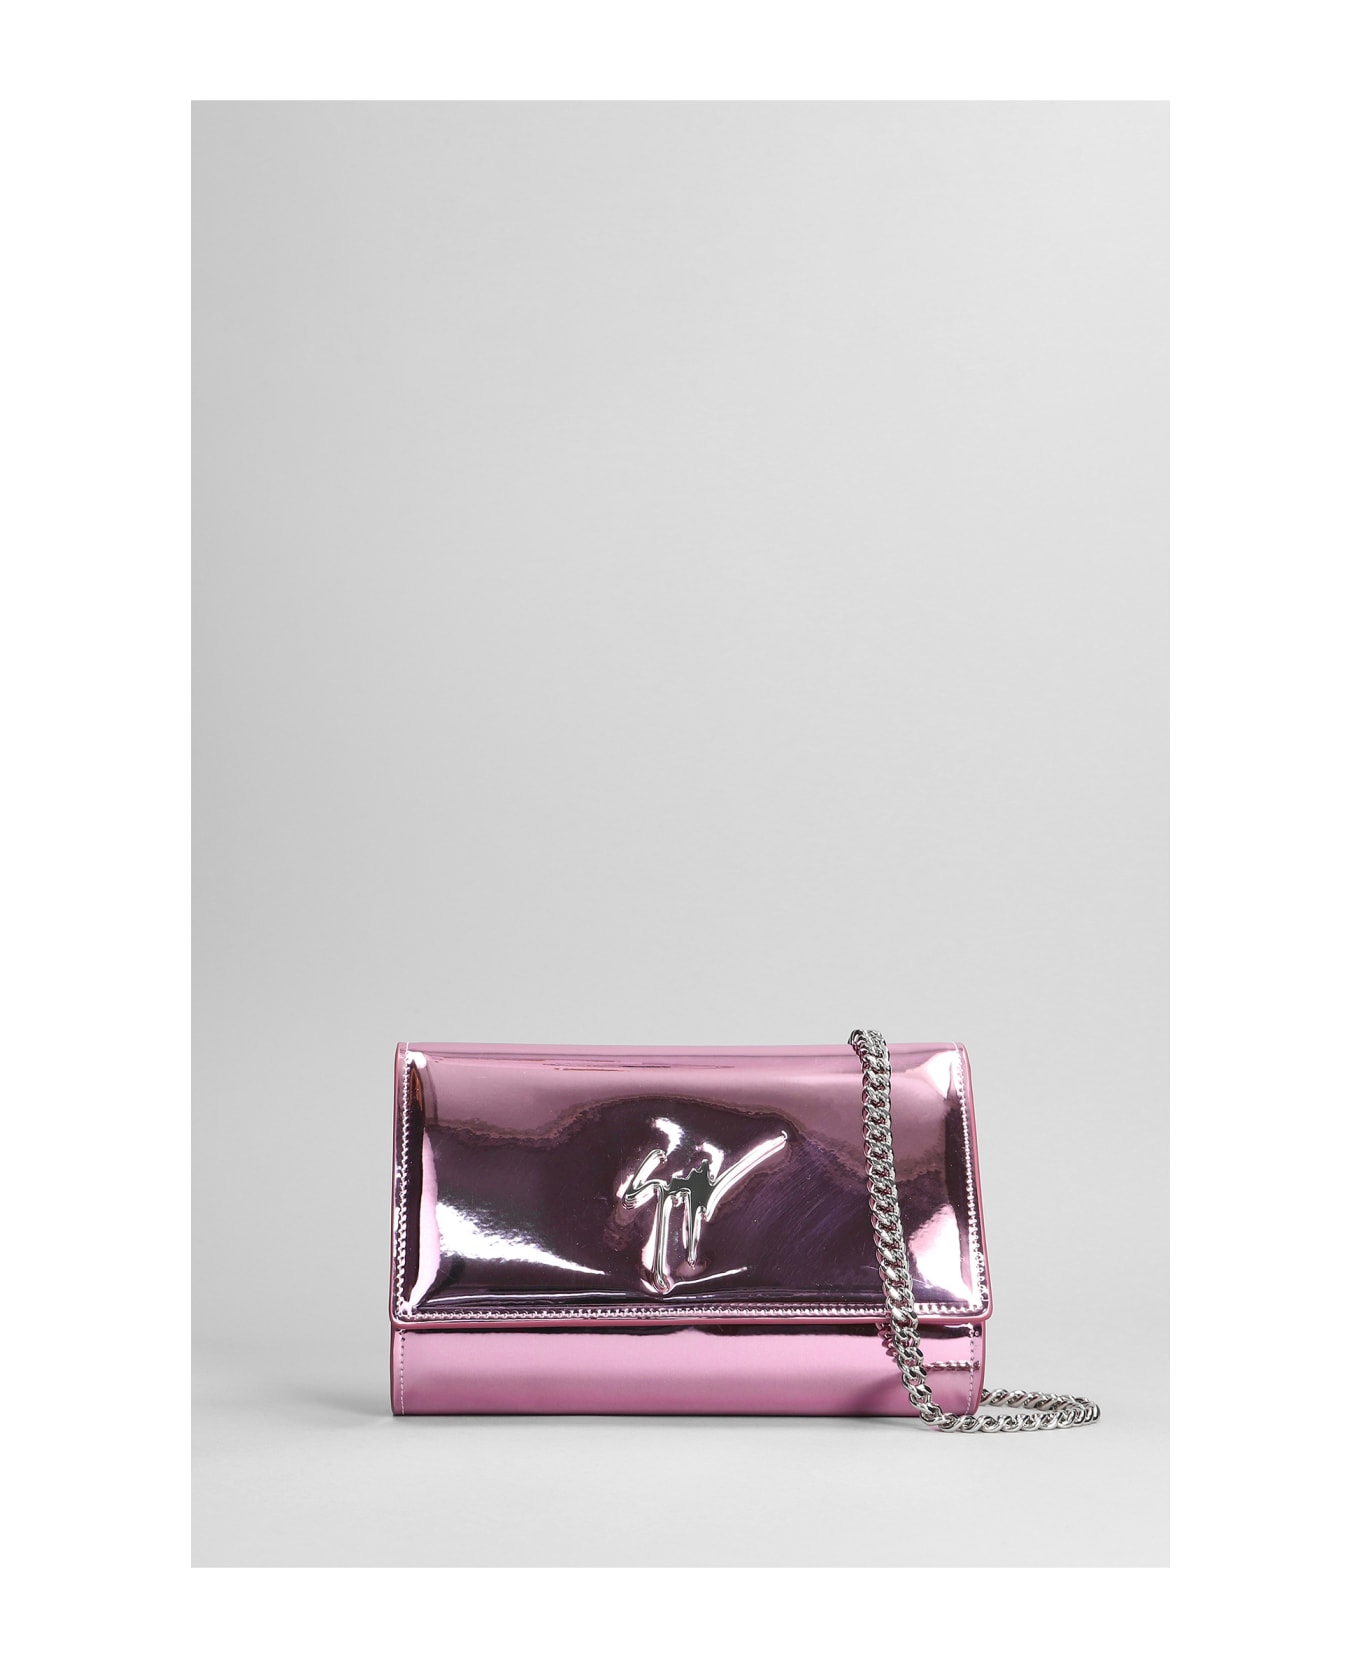 Giuseppe Zanotti Cleopatra Shoulder Bag In Rose-pink Leather - rose-pink